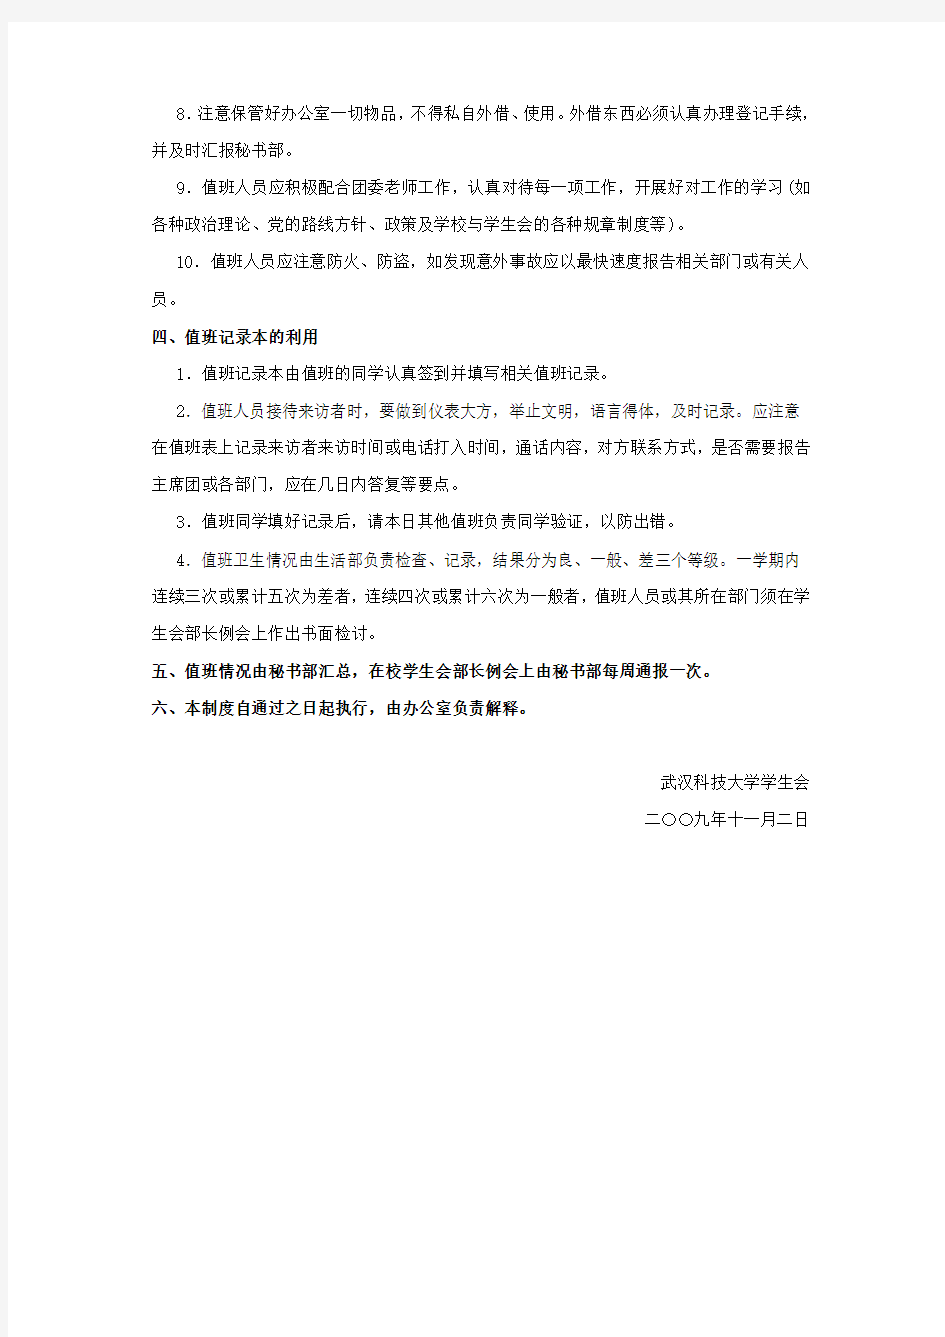 武汉科技大学学生会办公室值班制度